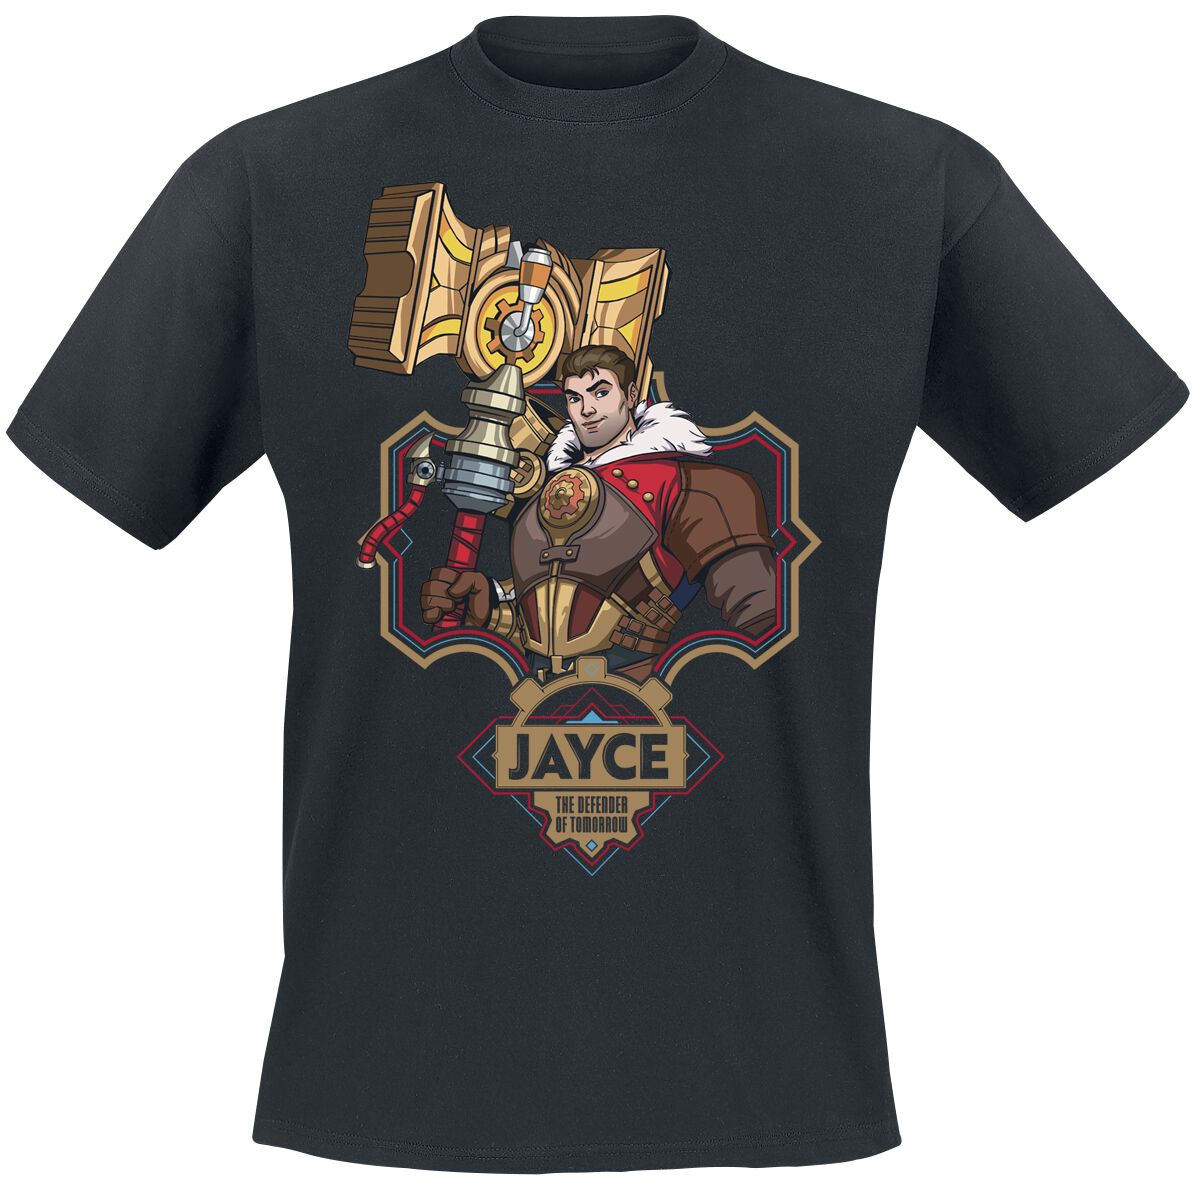 Arcane: League Of Legends - Gaming T-Shirt - Jayce - S bis XL - für Männer - Größe XL - schwarz  - EMP exklusives Merchandise!